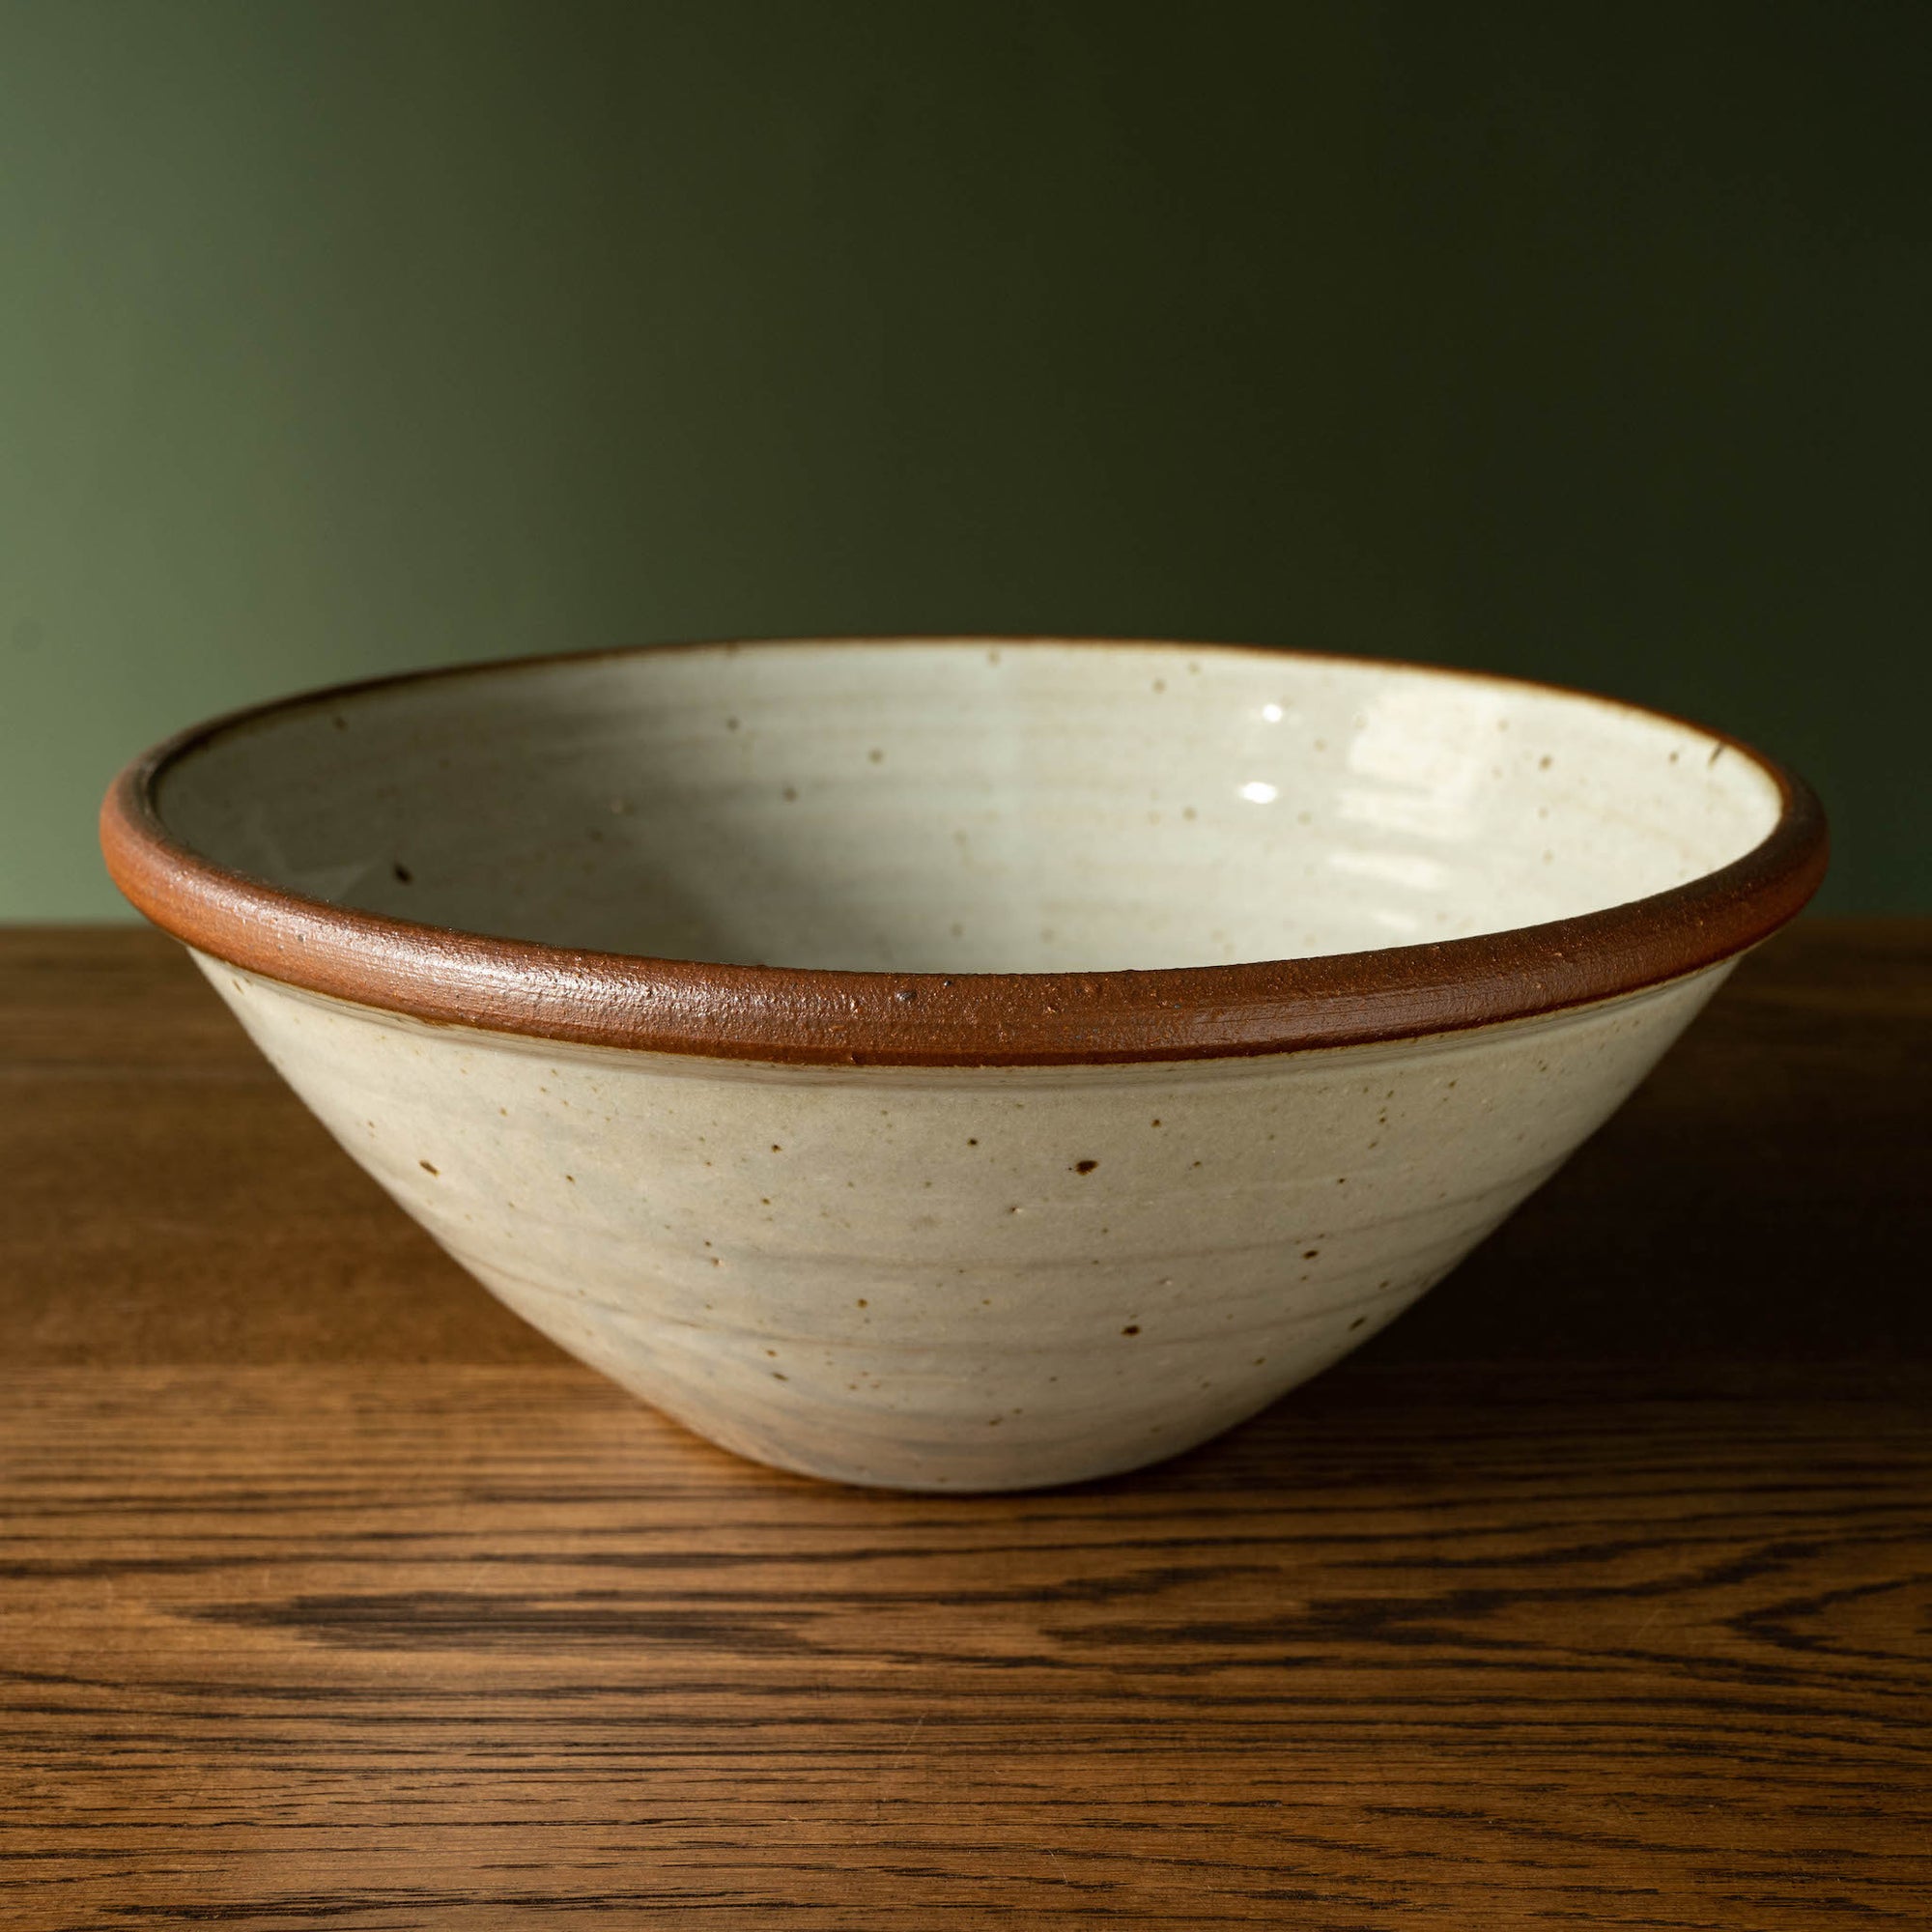 Leach Pottery XL Bowl in Dolomite glaze